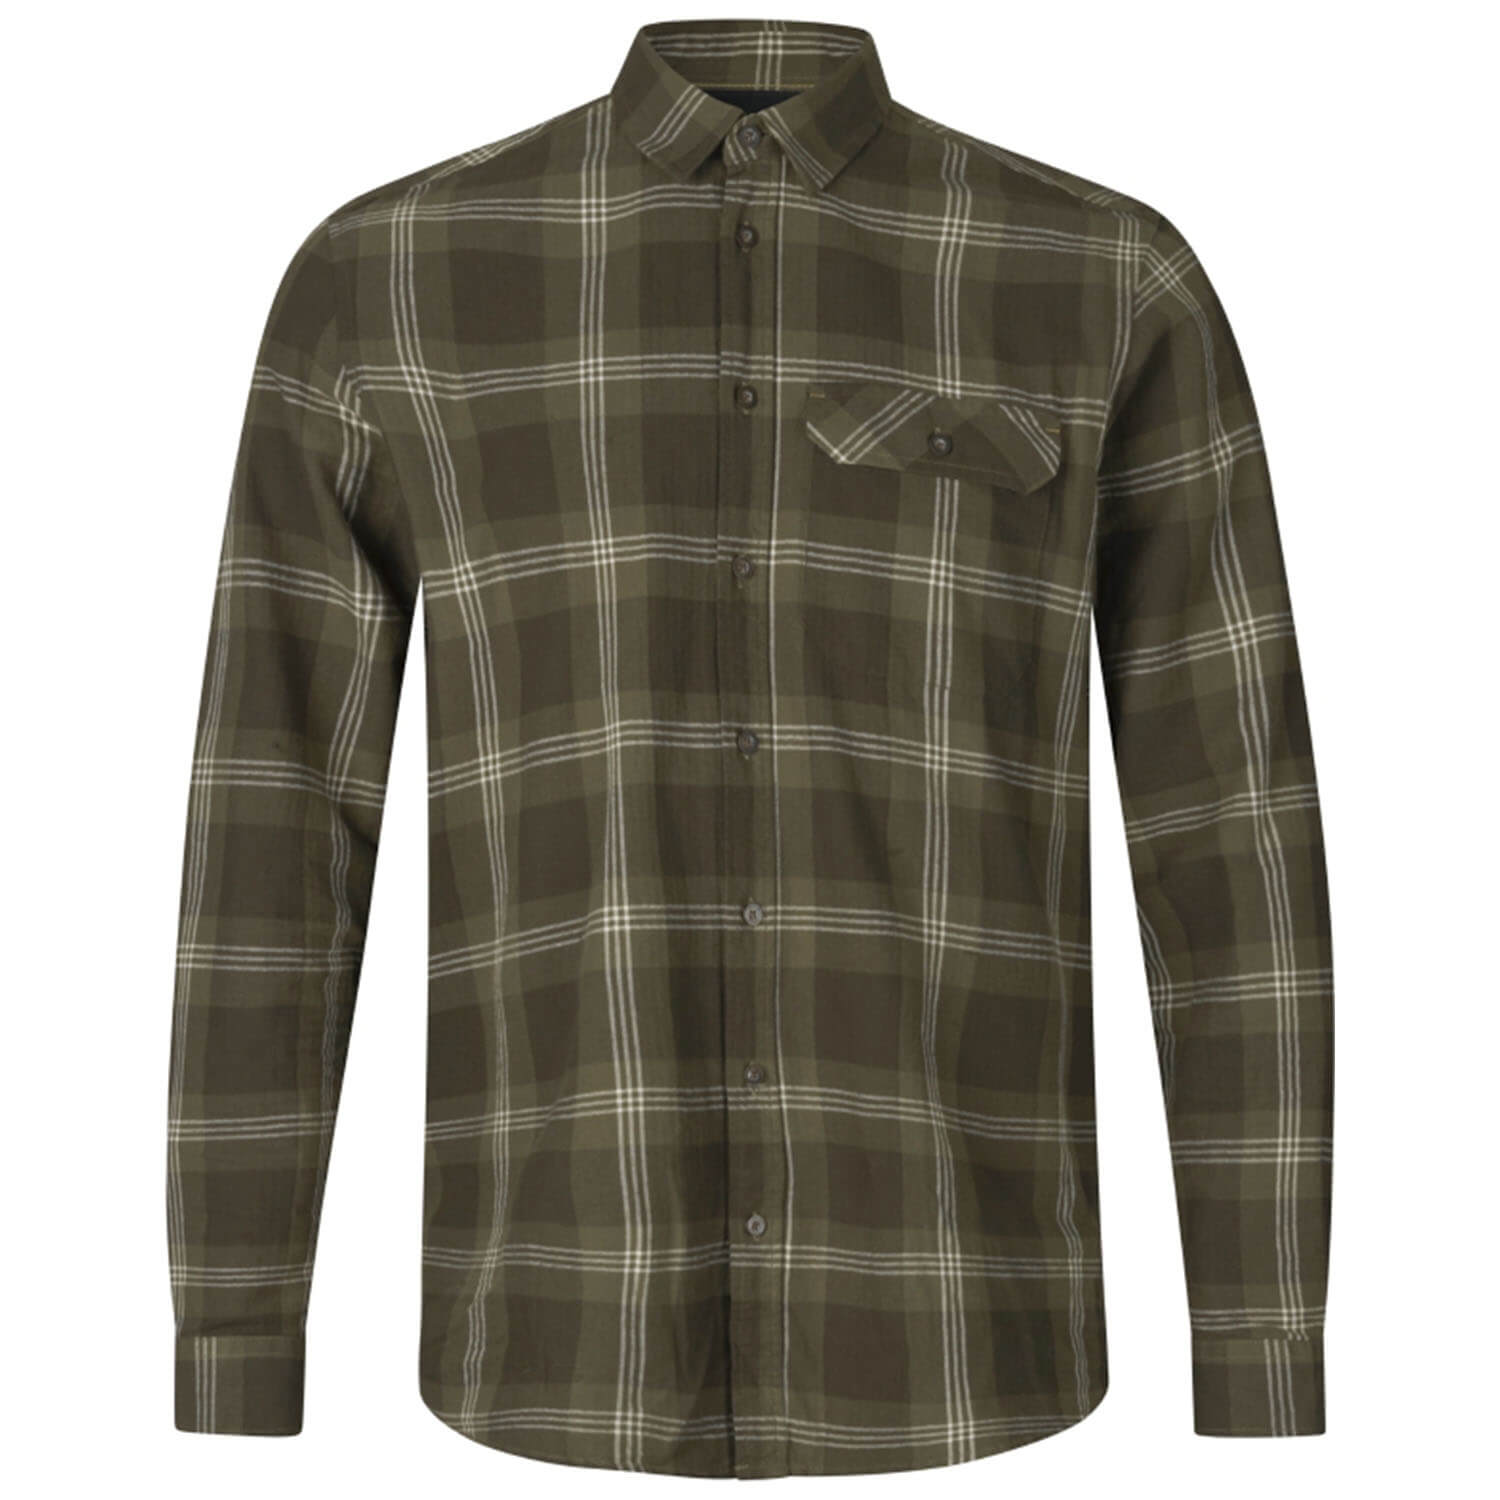  Seeland Jachthemd Highseat (Dennengroen geruit) - Overhemden & shirts